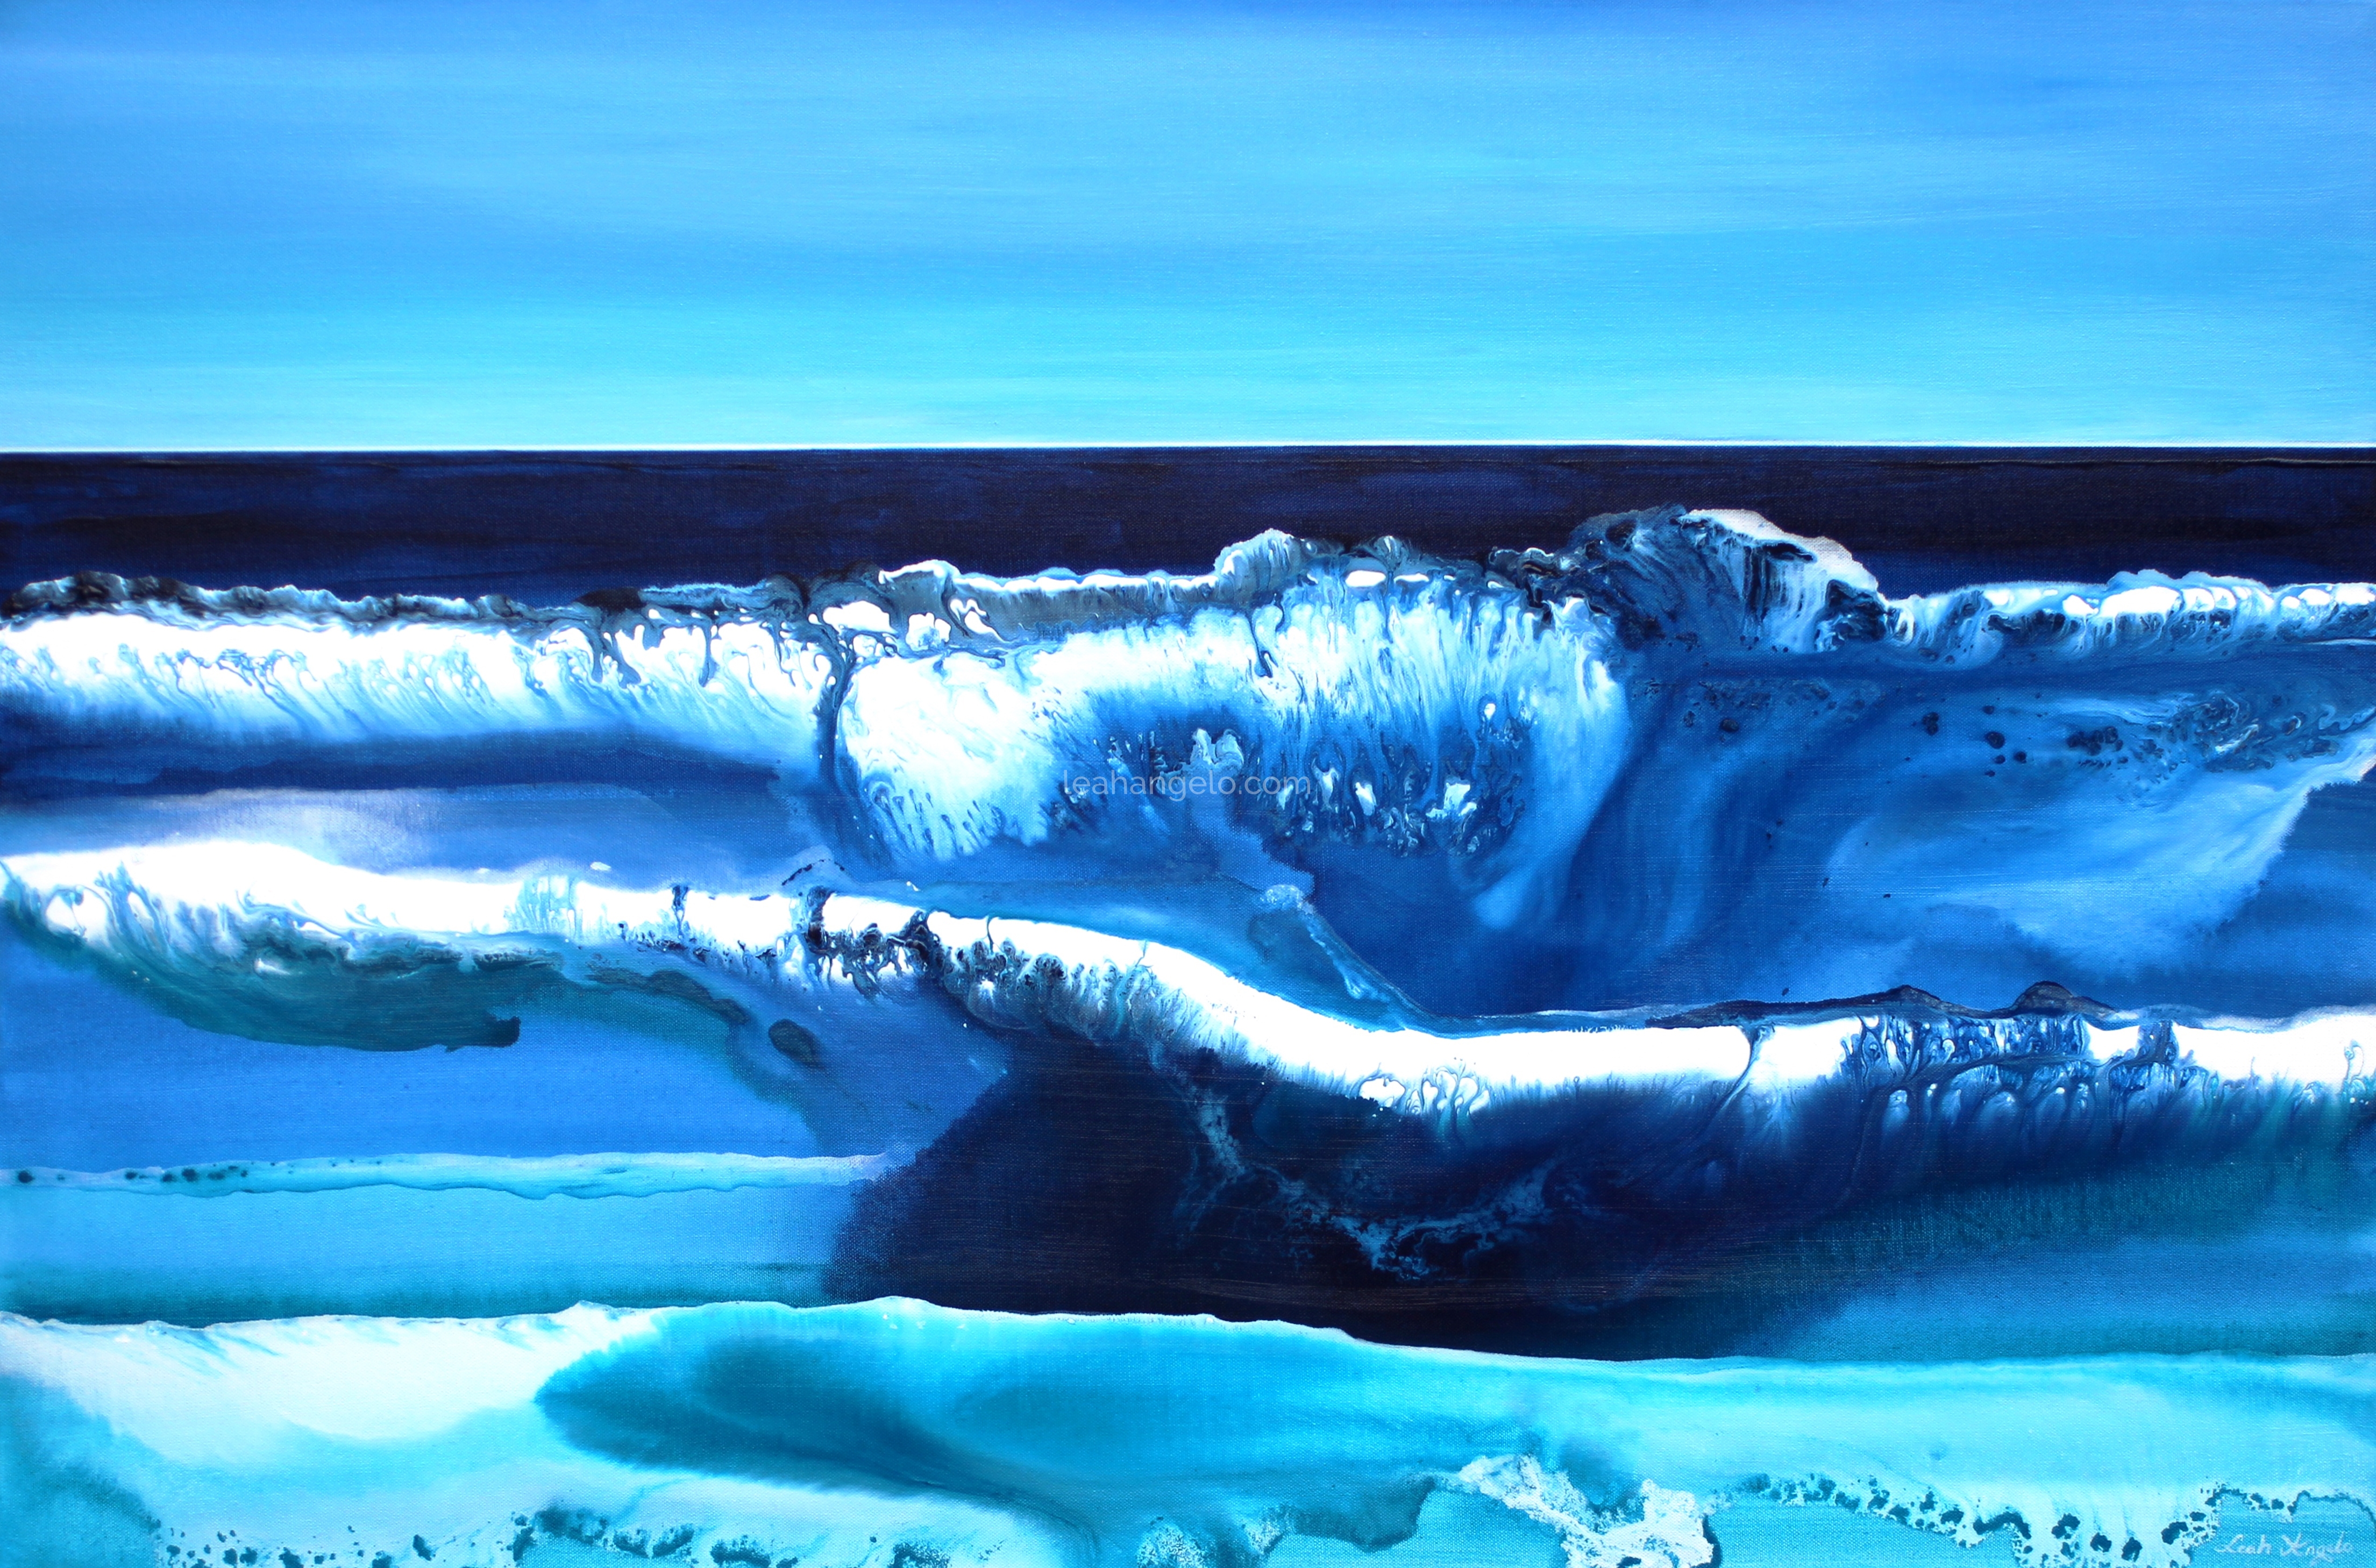 HEARTBEAT OF THE OCEAN - Acrylics on Canvas - (120 x 80 cm) Leah Angelo